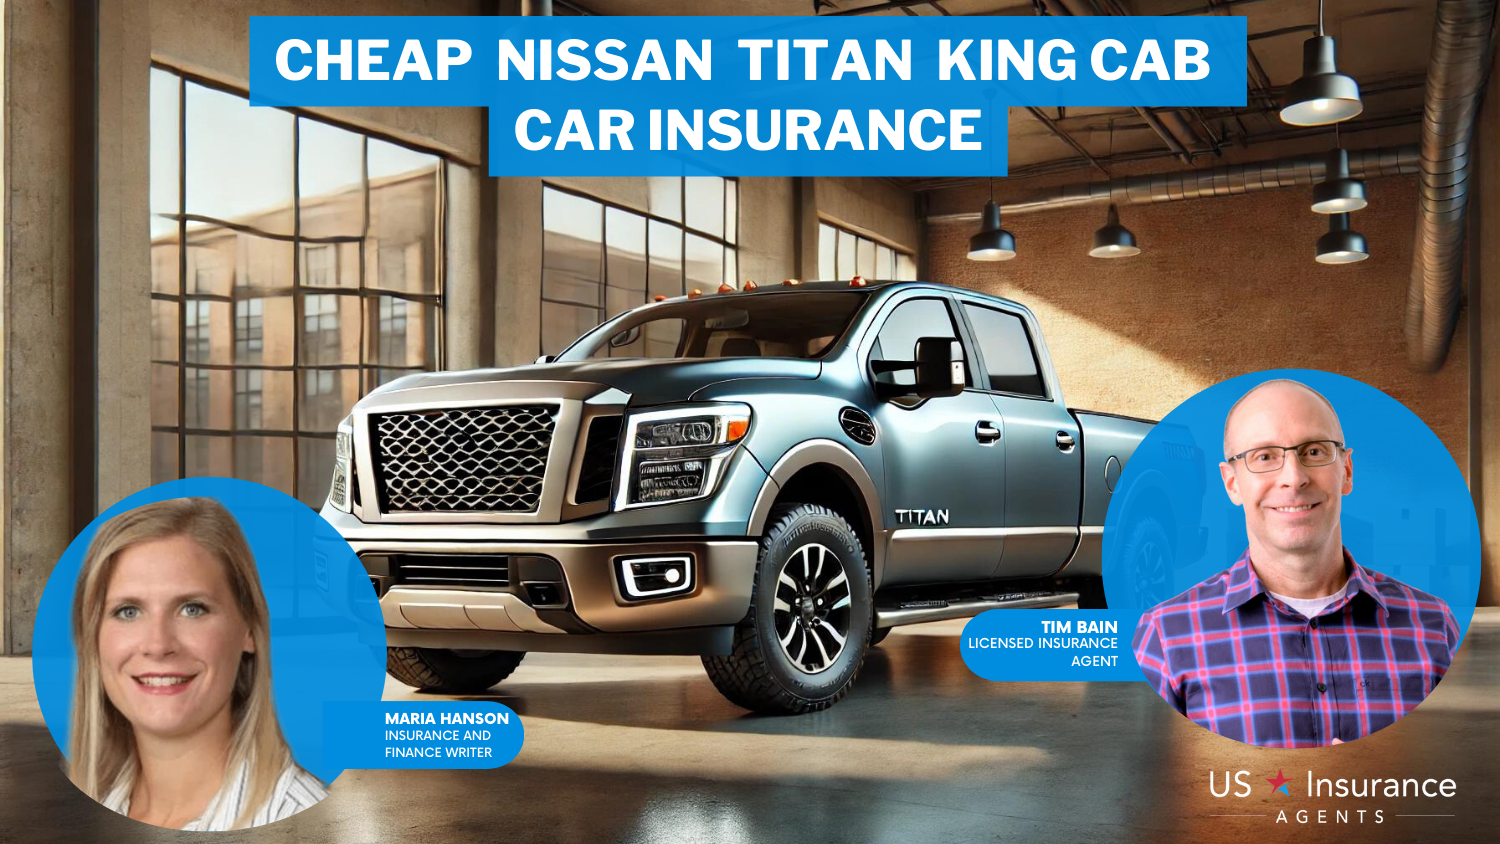 State Farm: Cheap Nissan Titan King Cab car insurance, auto insurance